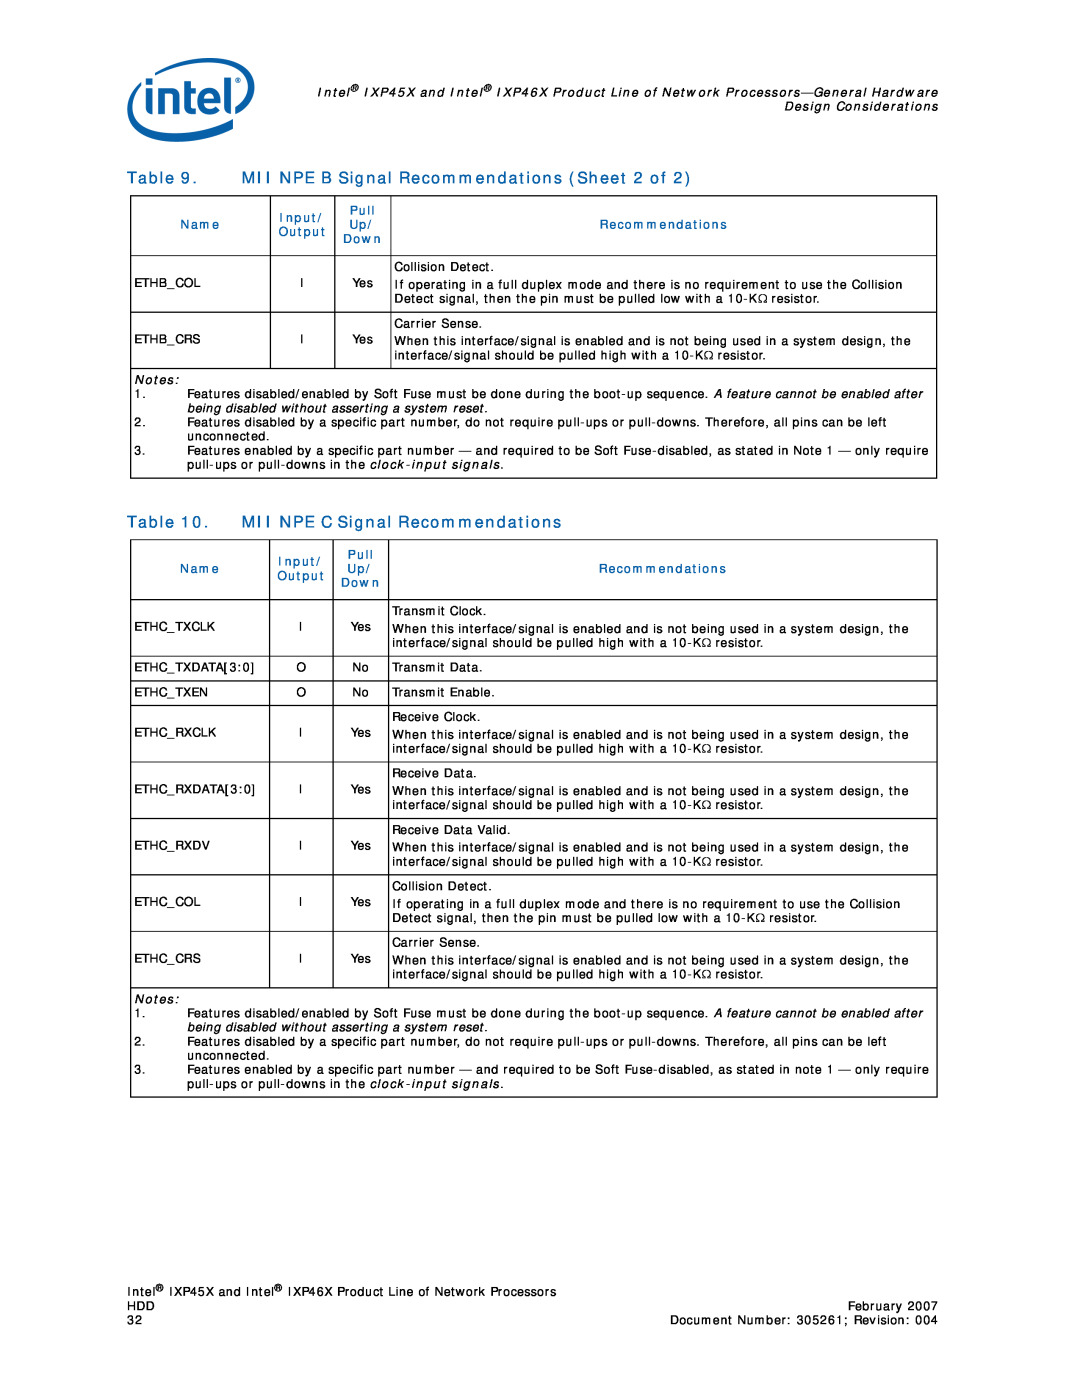 Intel IXP46X, IXP45X manual MII NPE B Signal Recommendations Sheet 2 of, MII NPE C Signal Recommendations 